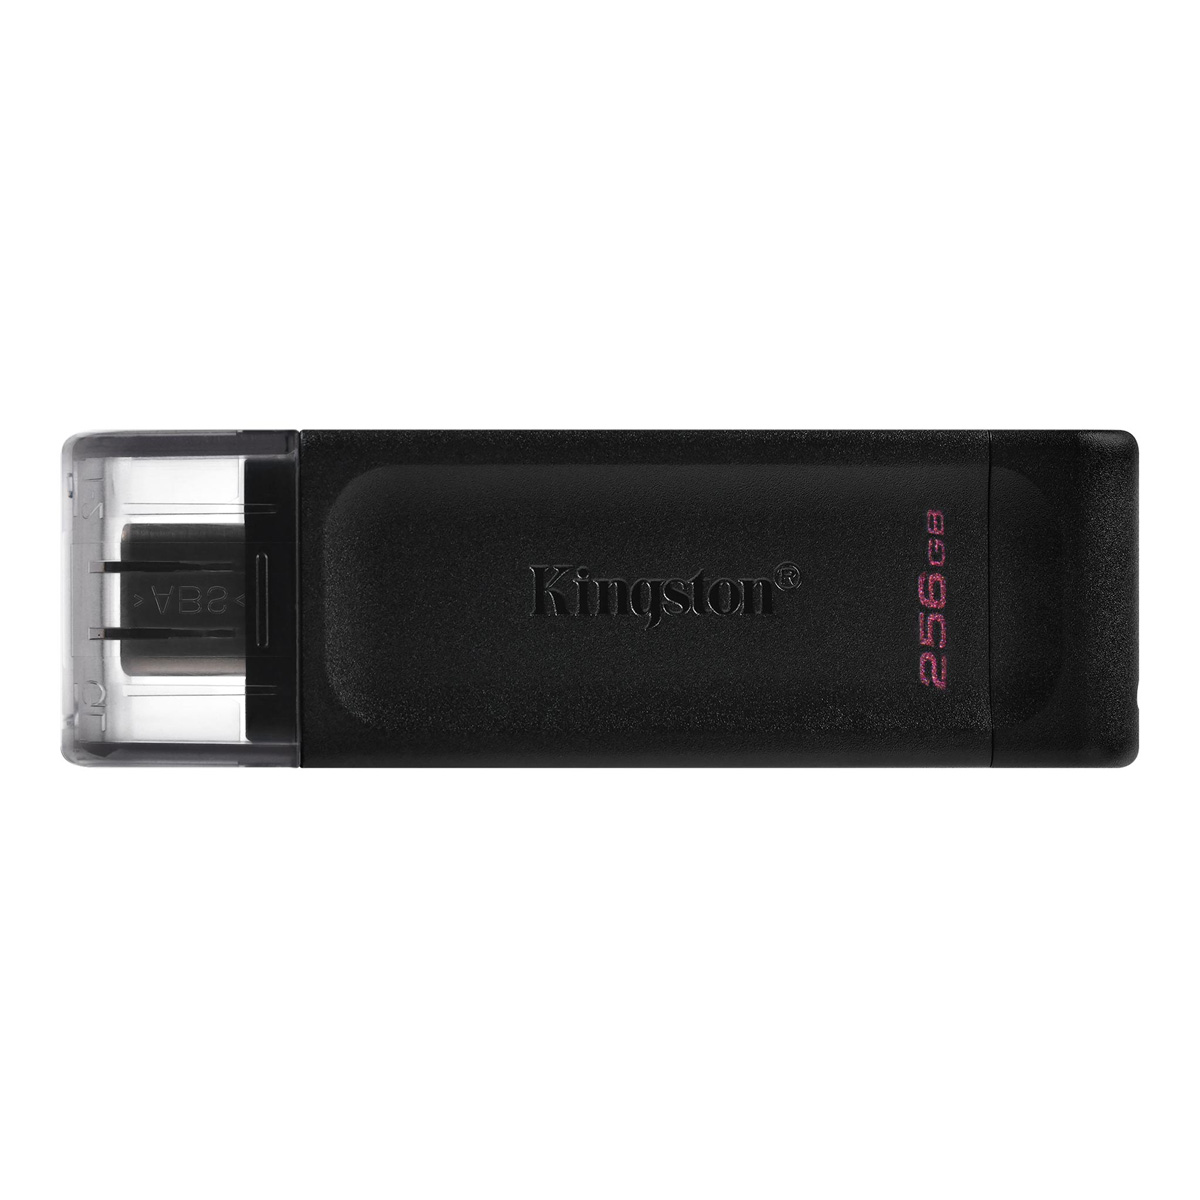 USB 256G KINGSTON USB-C 3.2 DT70 G1